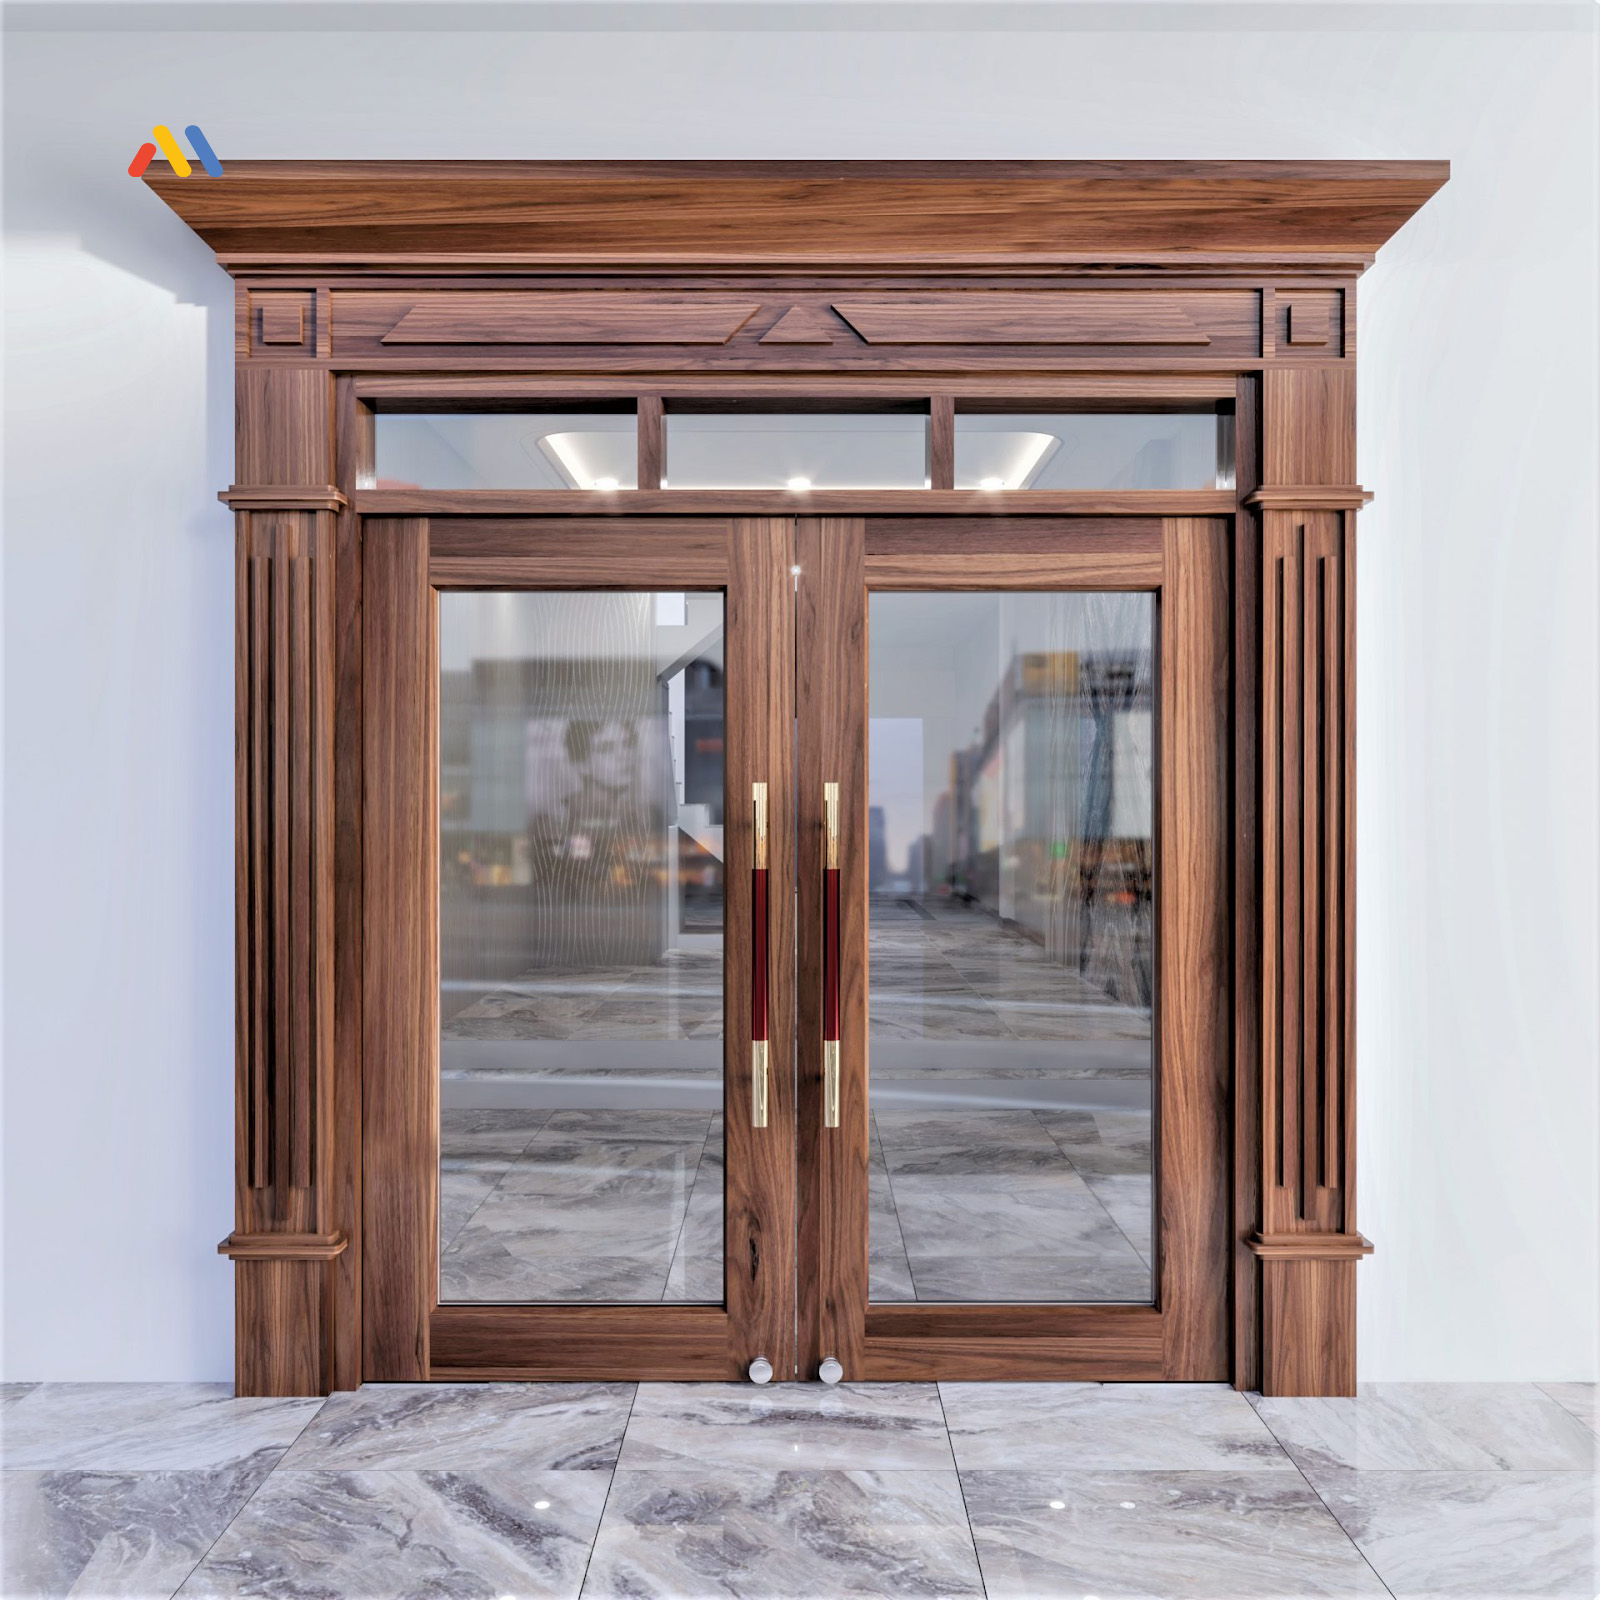 Mẫu cửa sắt giả gỗ 2 cánh mặt kính dành cho nhà hàng, hội nghị